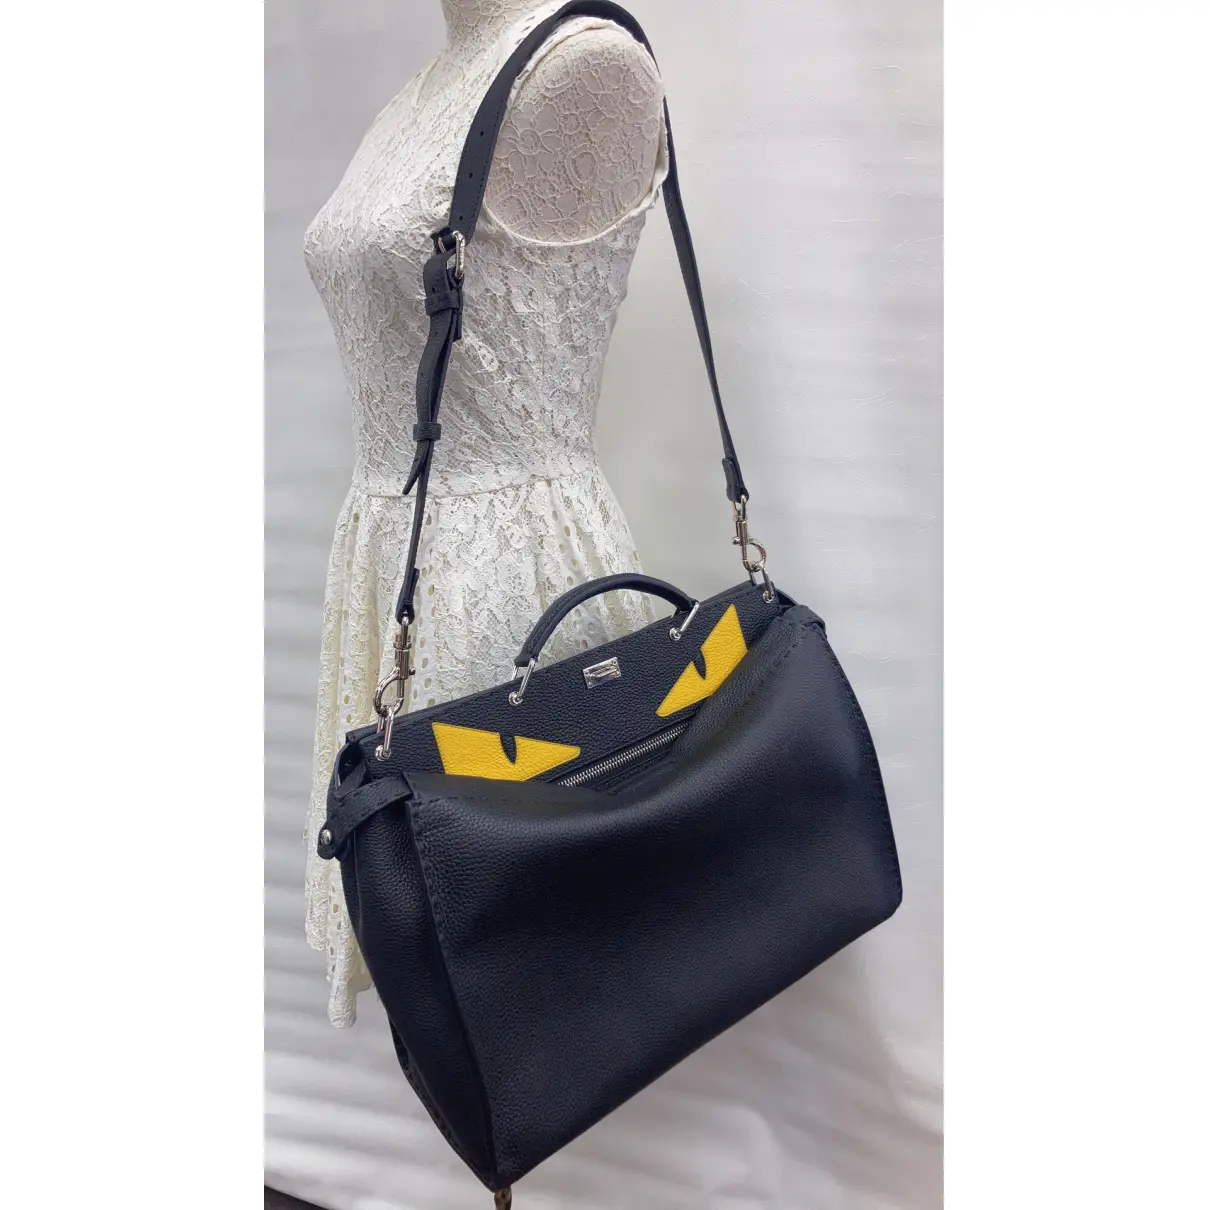 Buy Fendi Peekaboo leather bag online